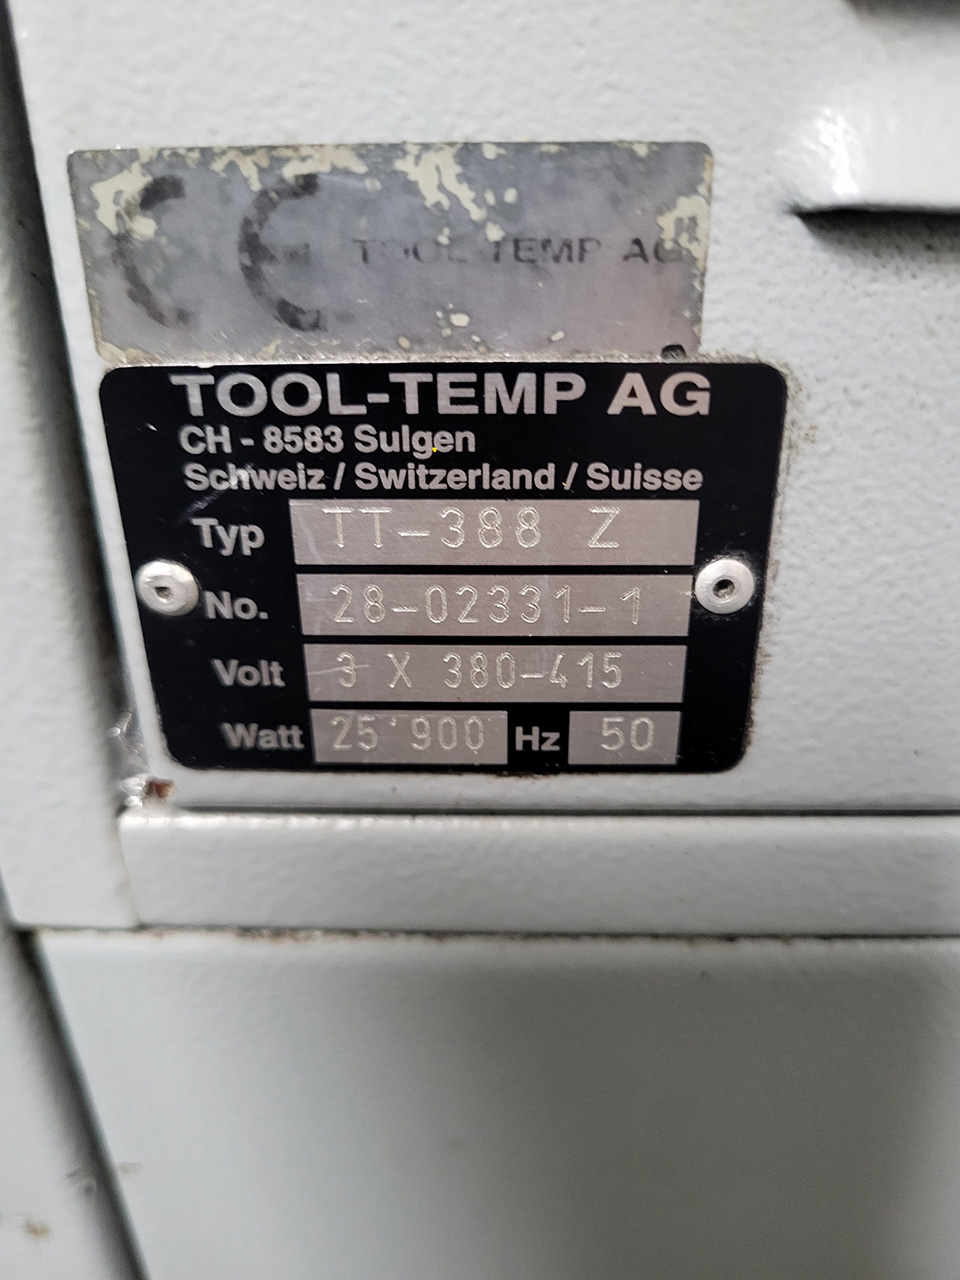 Unitate de control al temperaturii ToolTemp TT-388 ZU2230, folosită